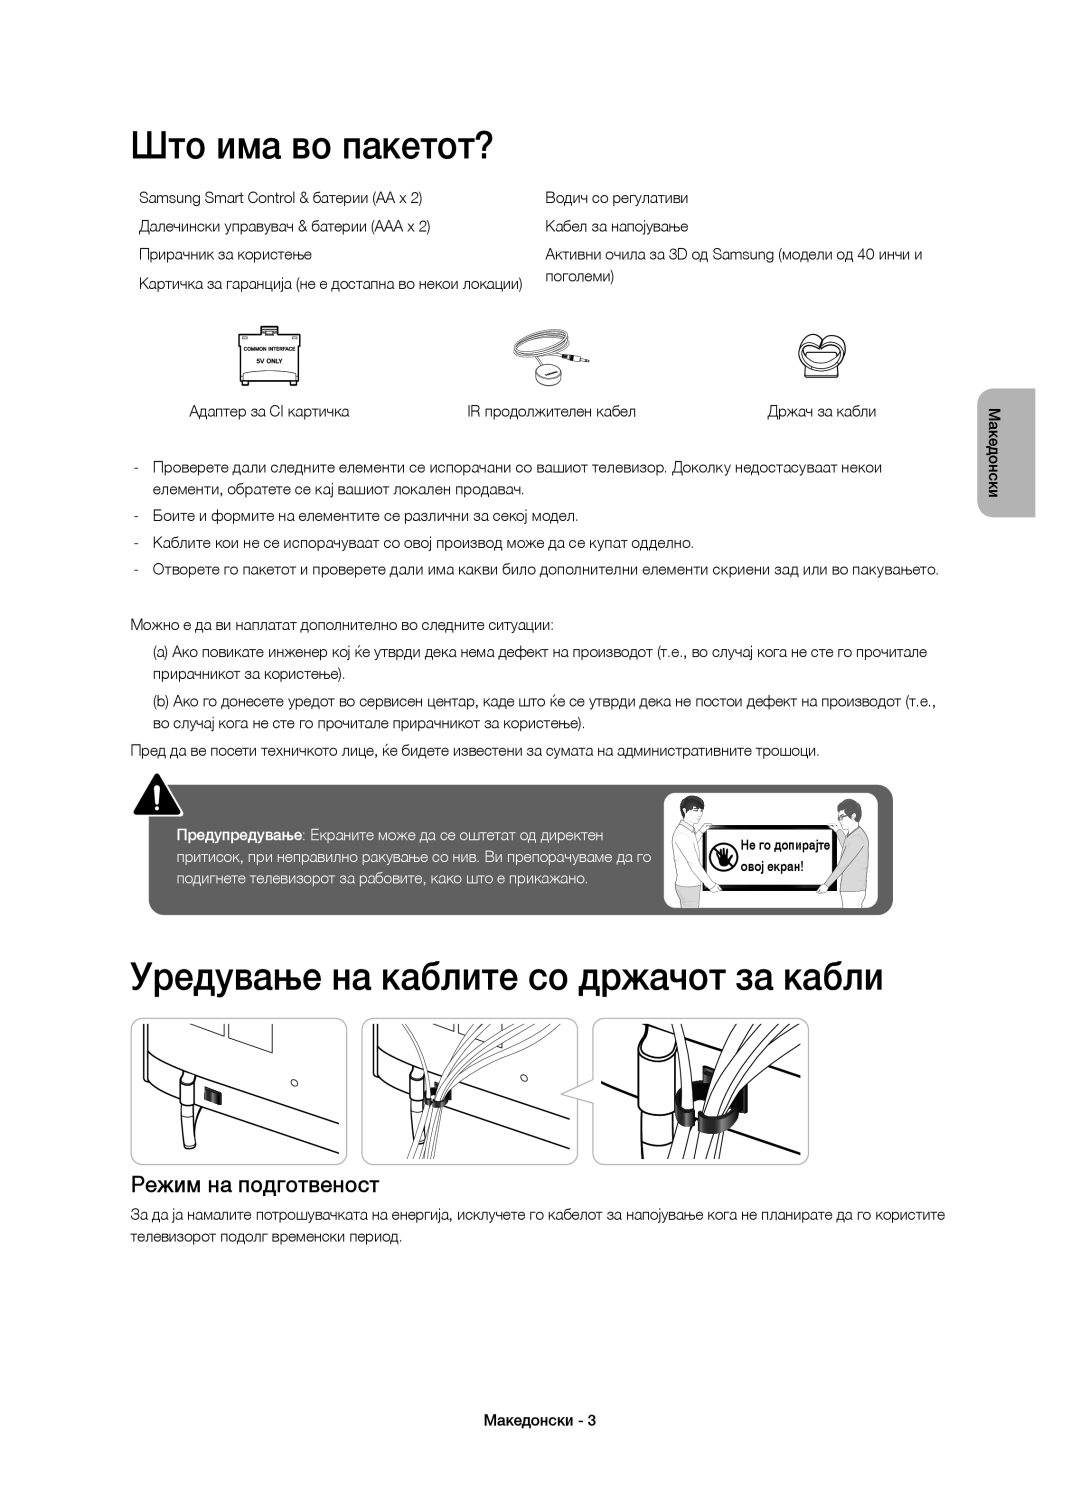 Samsung UE55H6410SSXXN manual Што има во пакетот?, Уредување на каблите со држачот за кабли, Режим на подготвеност 